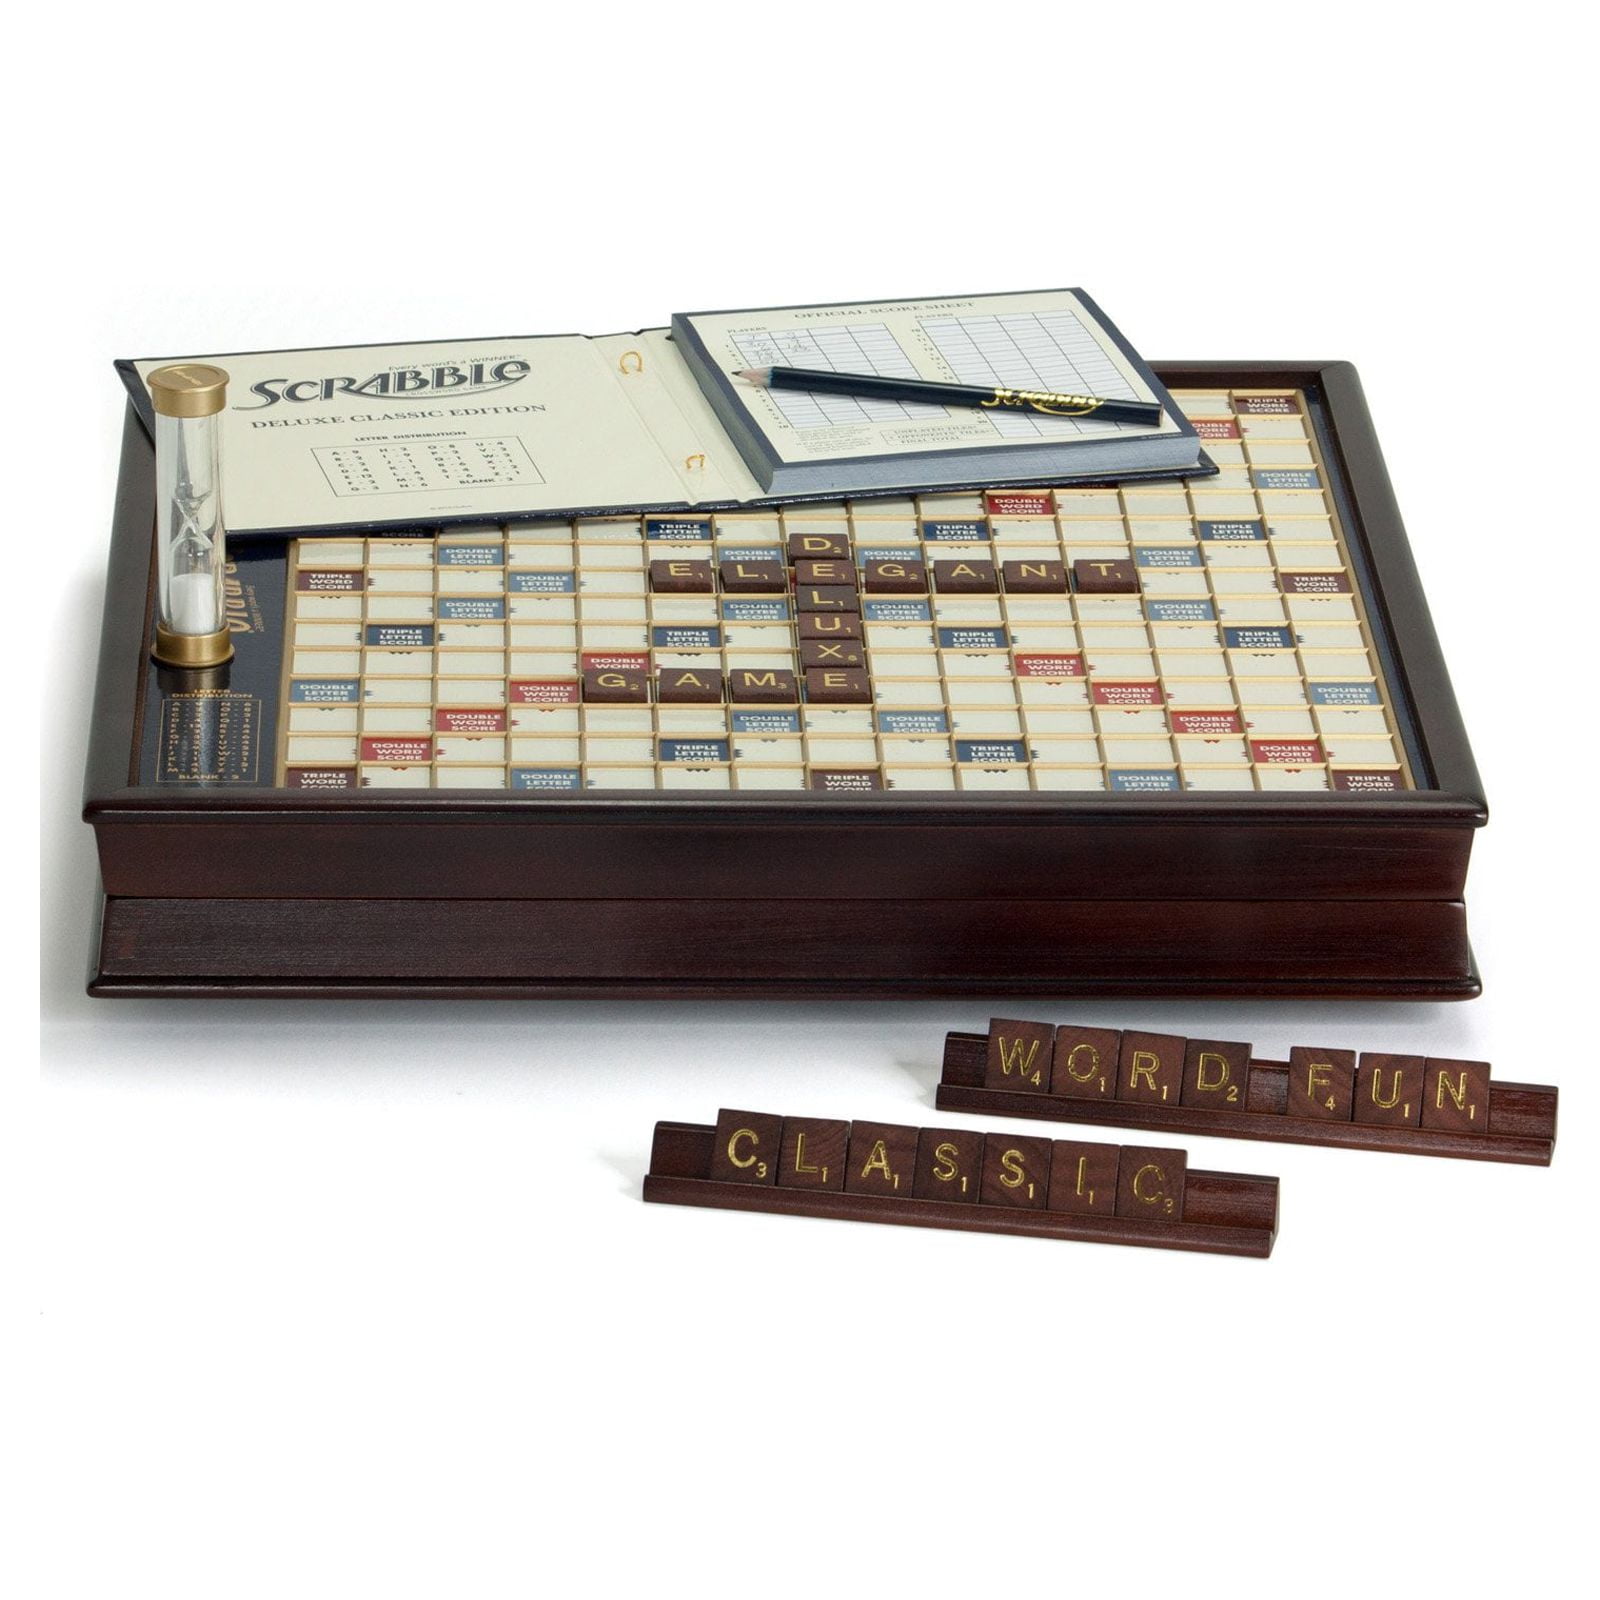 Buy Computer Scrabble Deluxe for AST